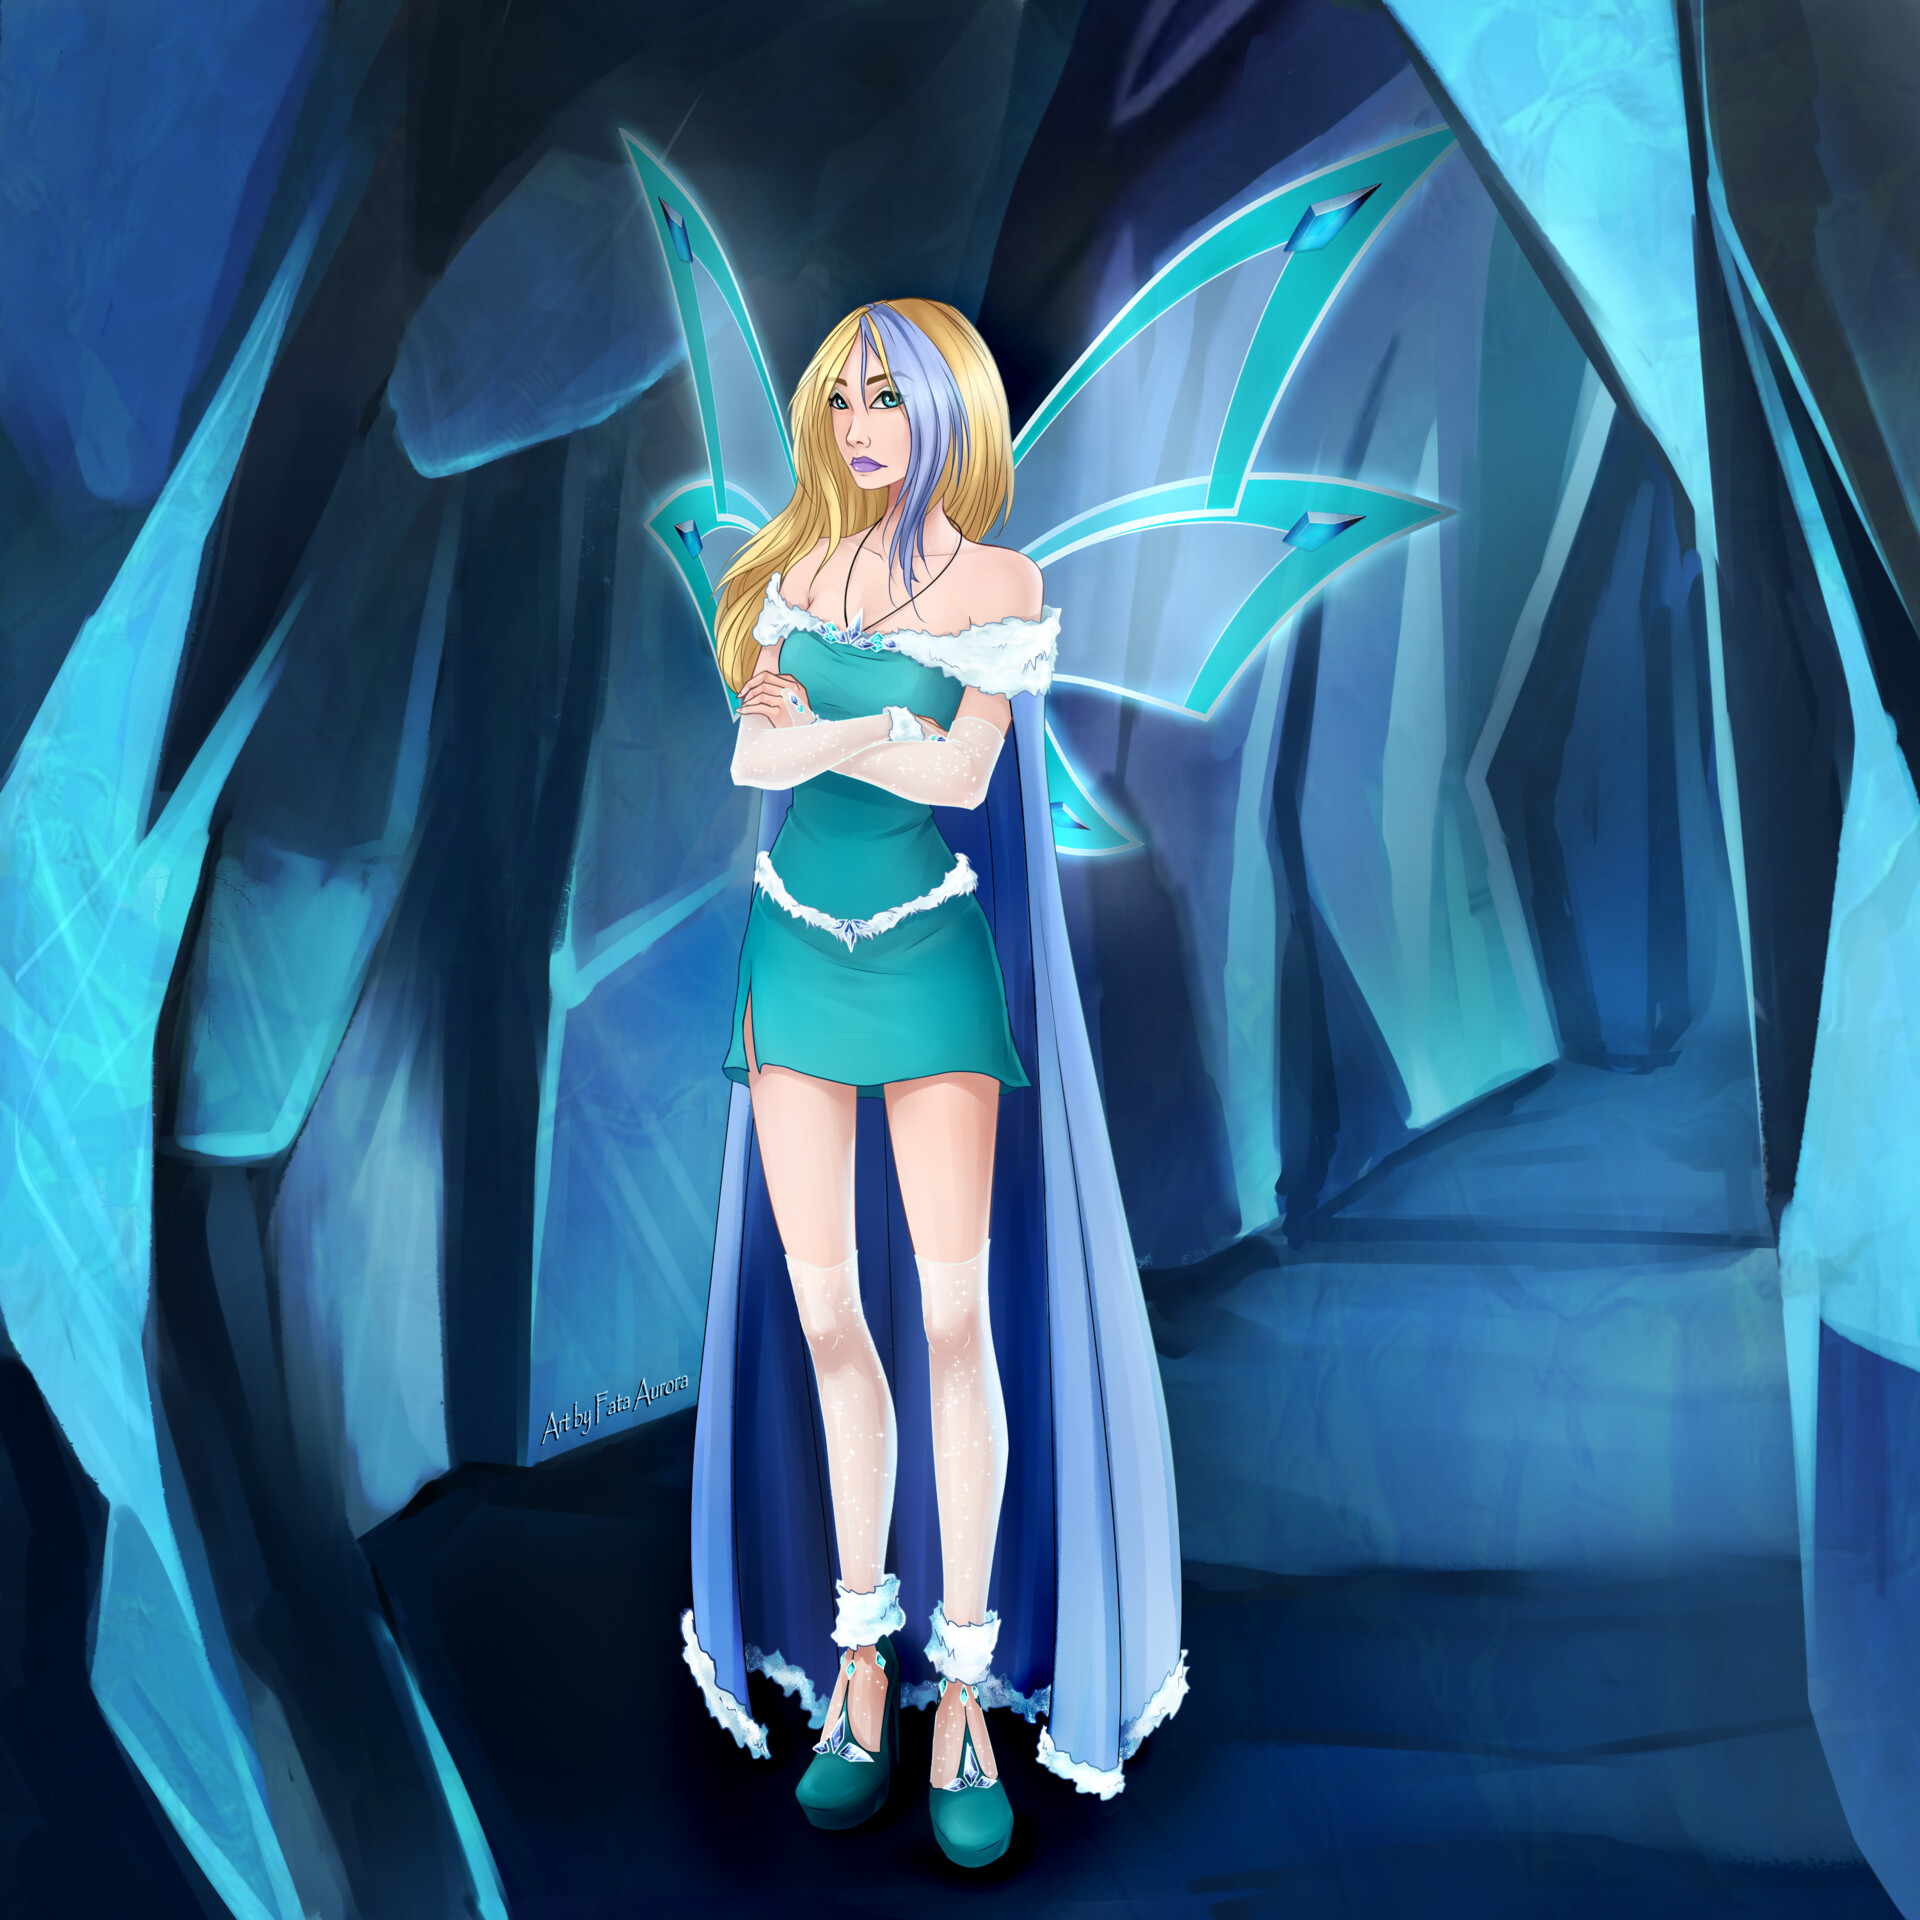 Aurora vs. Icy by FataAurora on DeviantArt